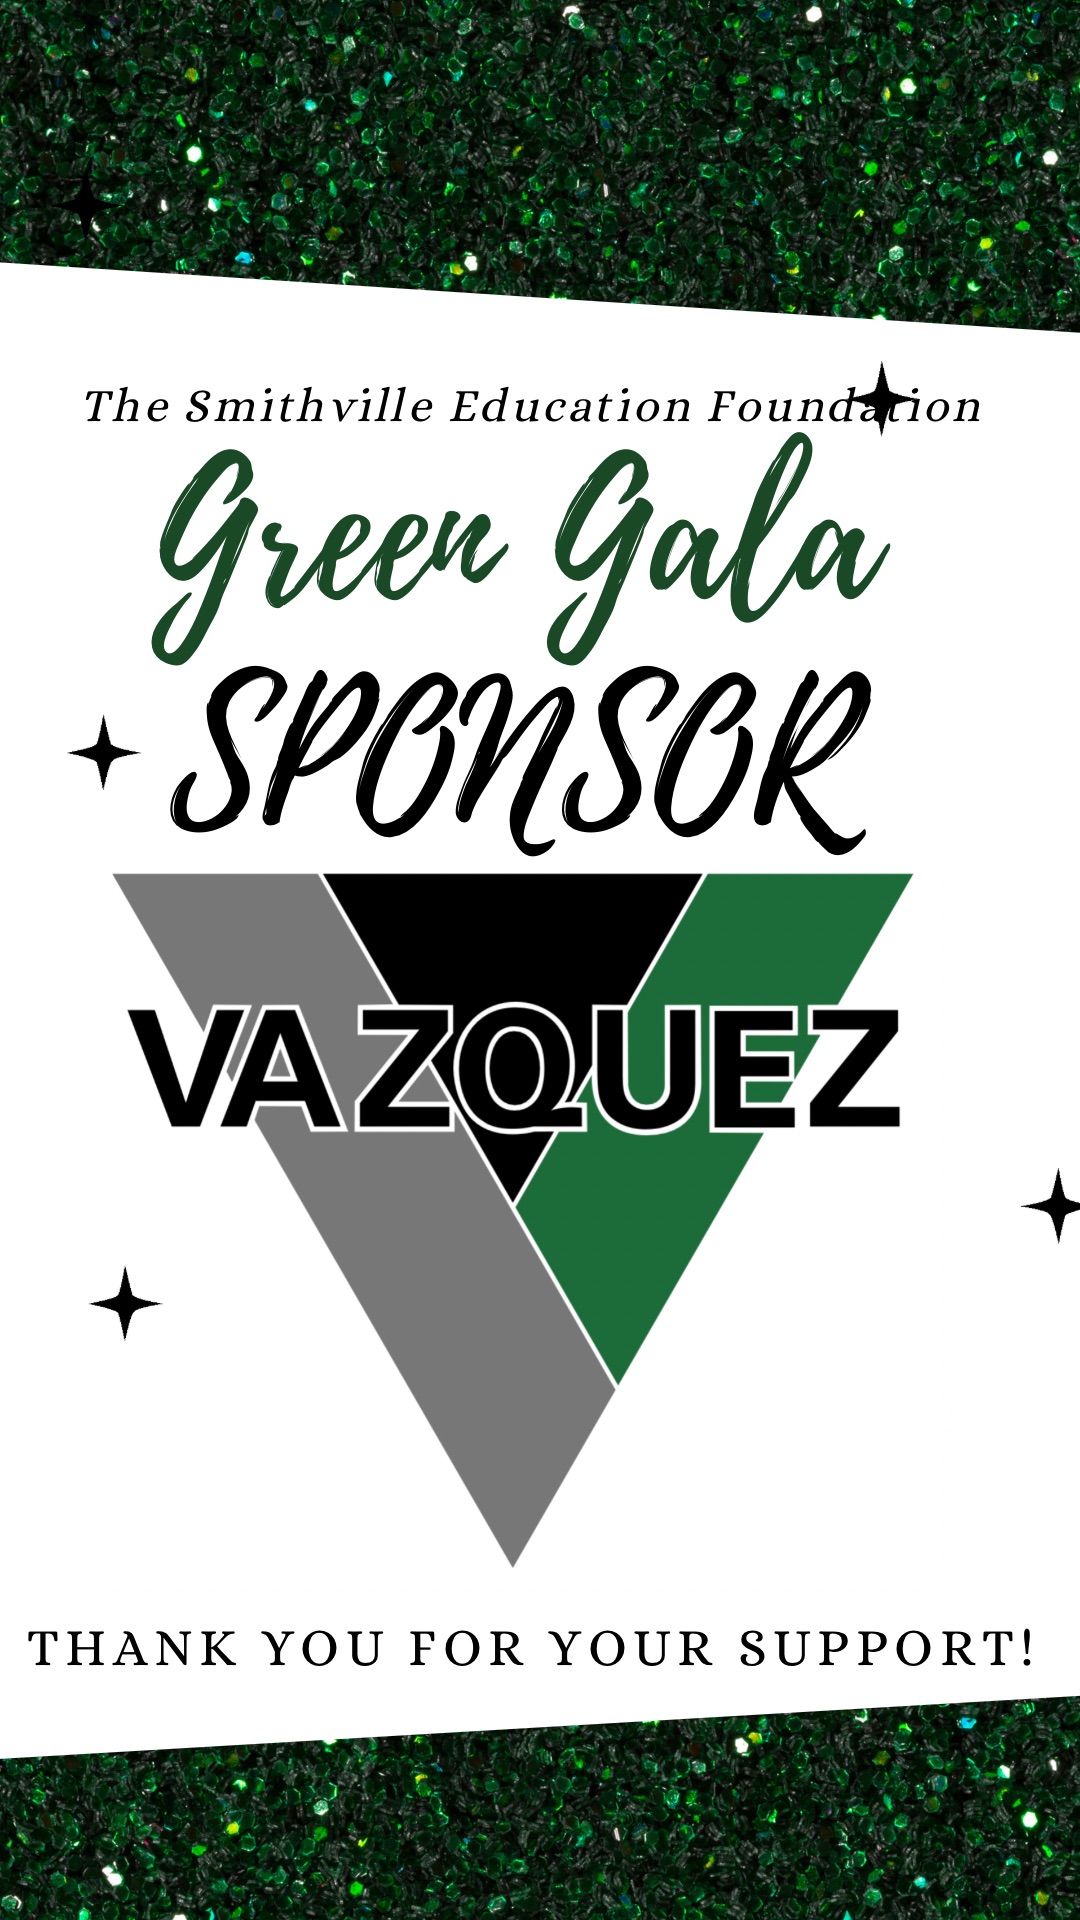 Green Gala Sponsor Vazquez